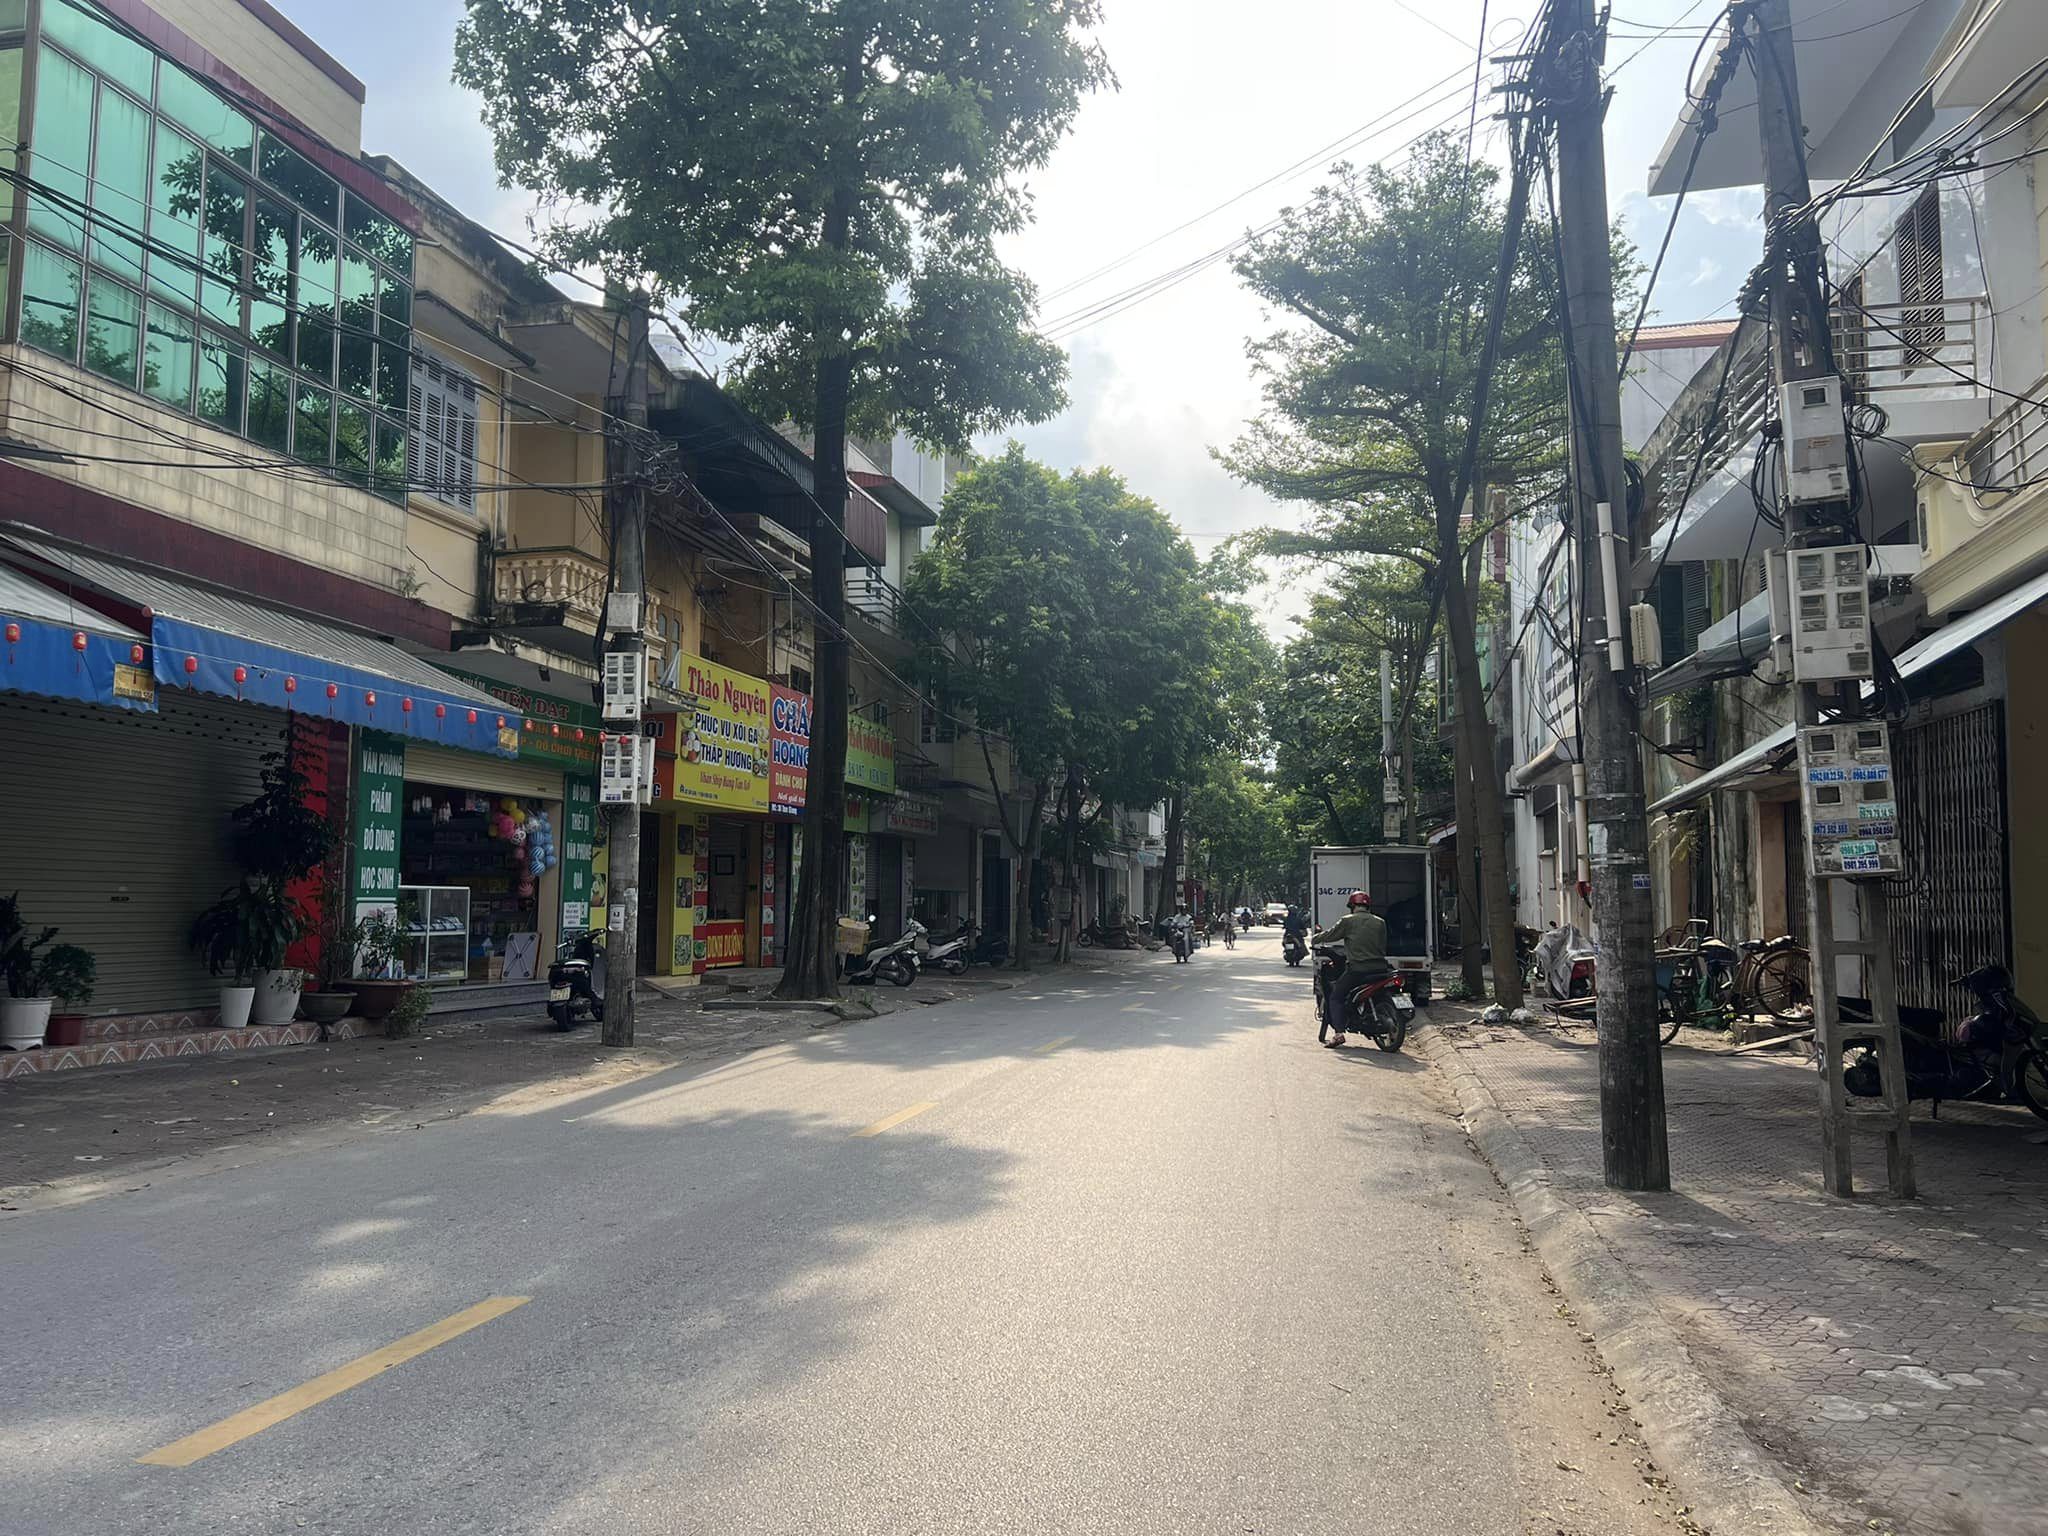 Bán đất kinh doanh mặt phố Tam Giang, TP Hải Dương, 105m2, mt 4.35m, KD buôn bán tốt 1